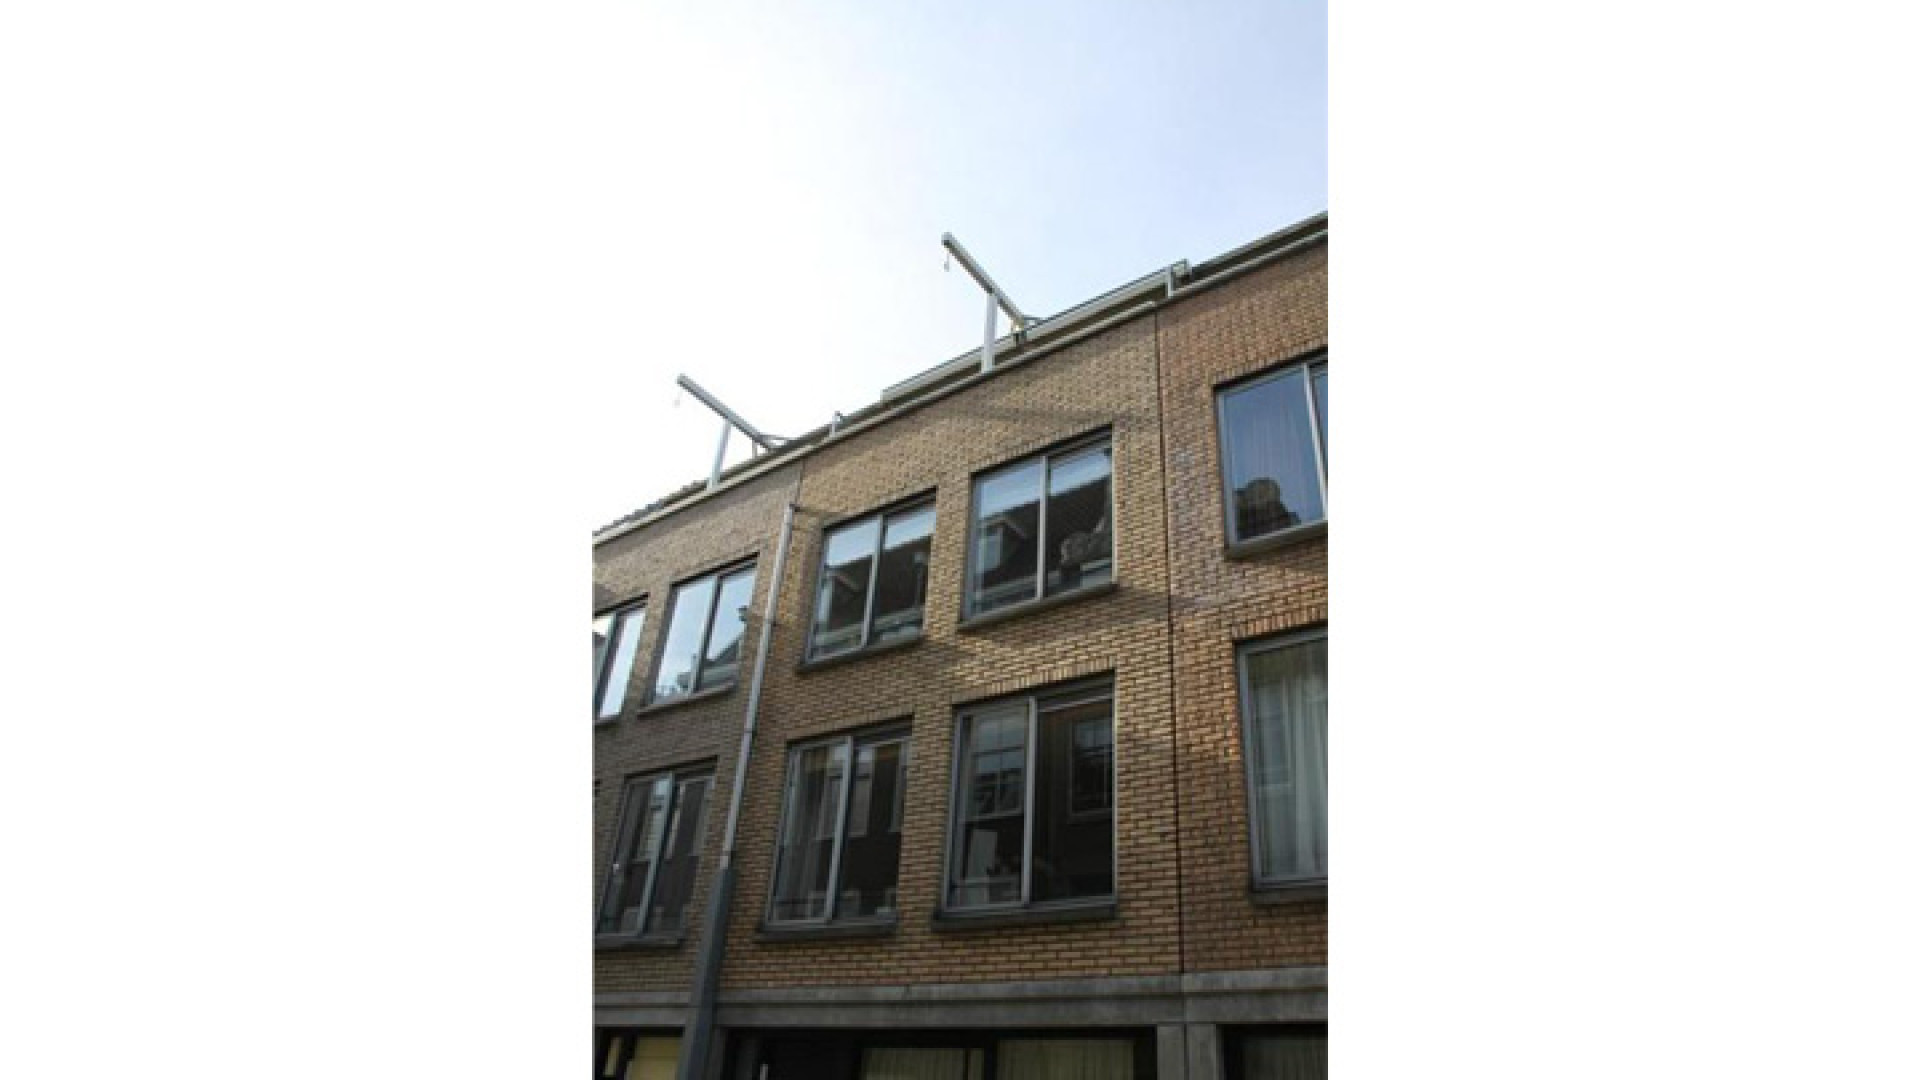 Frank Evenblij haalt zijn huis in de Amsterdamse Jordaan uit de verkoop. Zie foto's 1